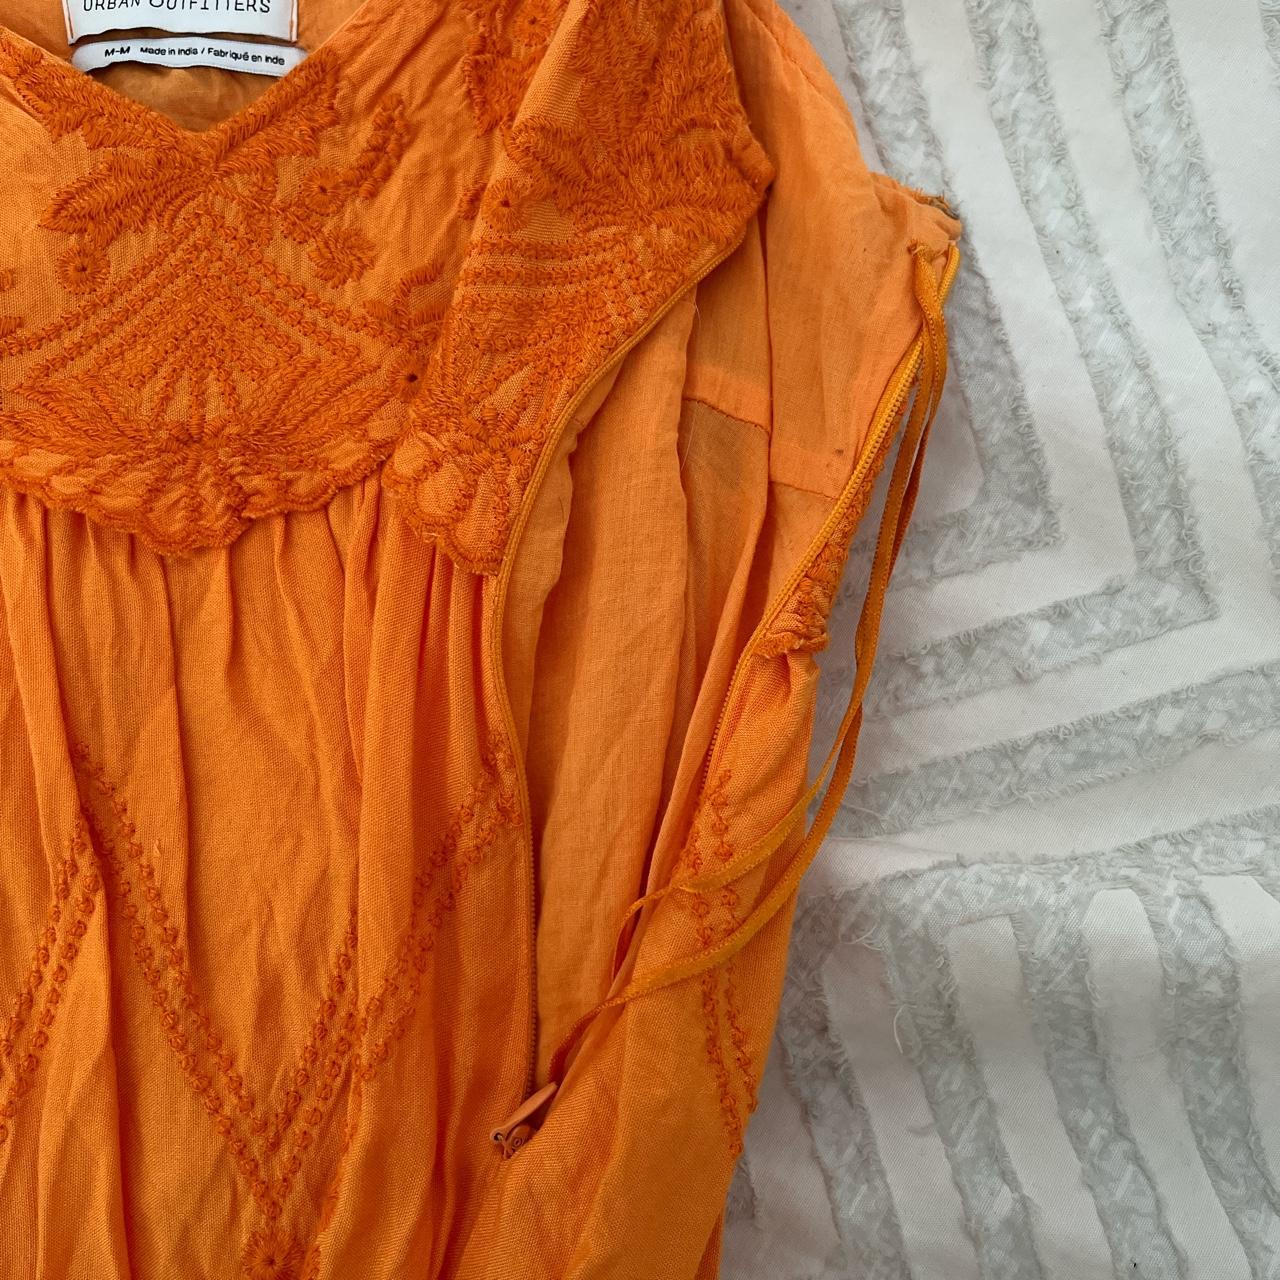 Urban Outfitters Women's Orange Dress | Depop